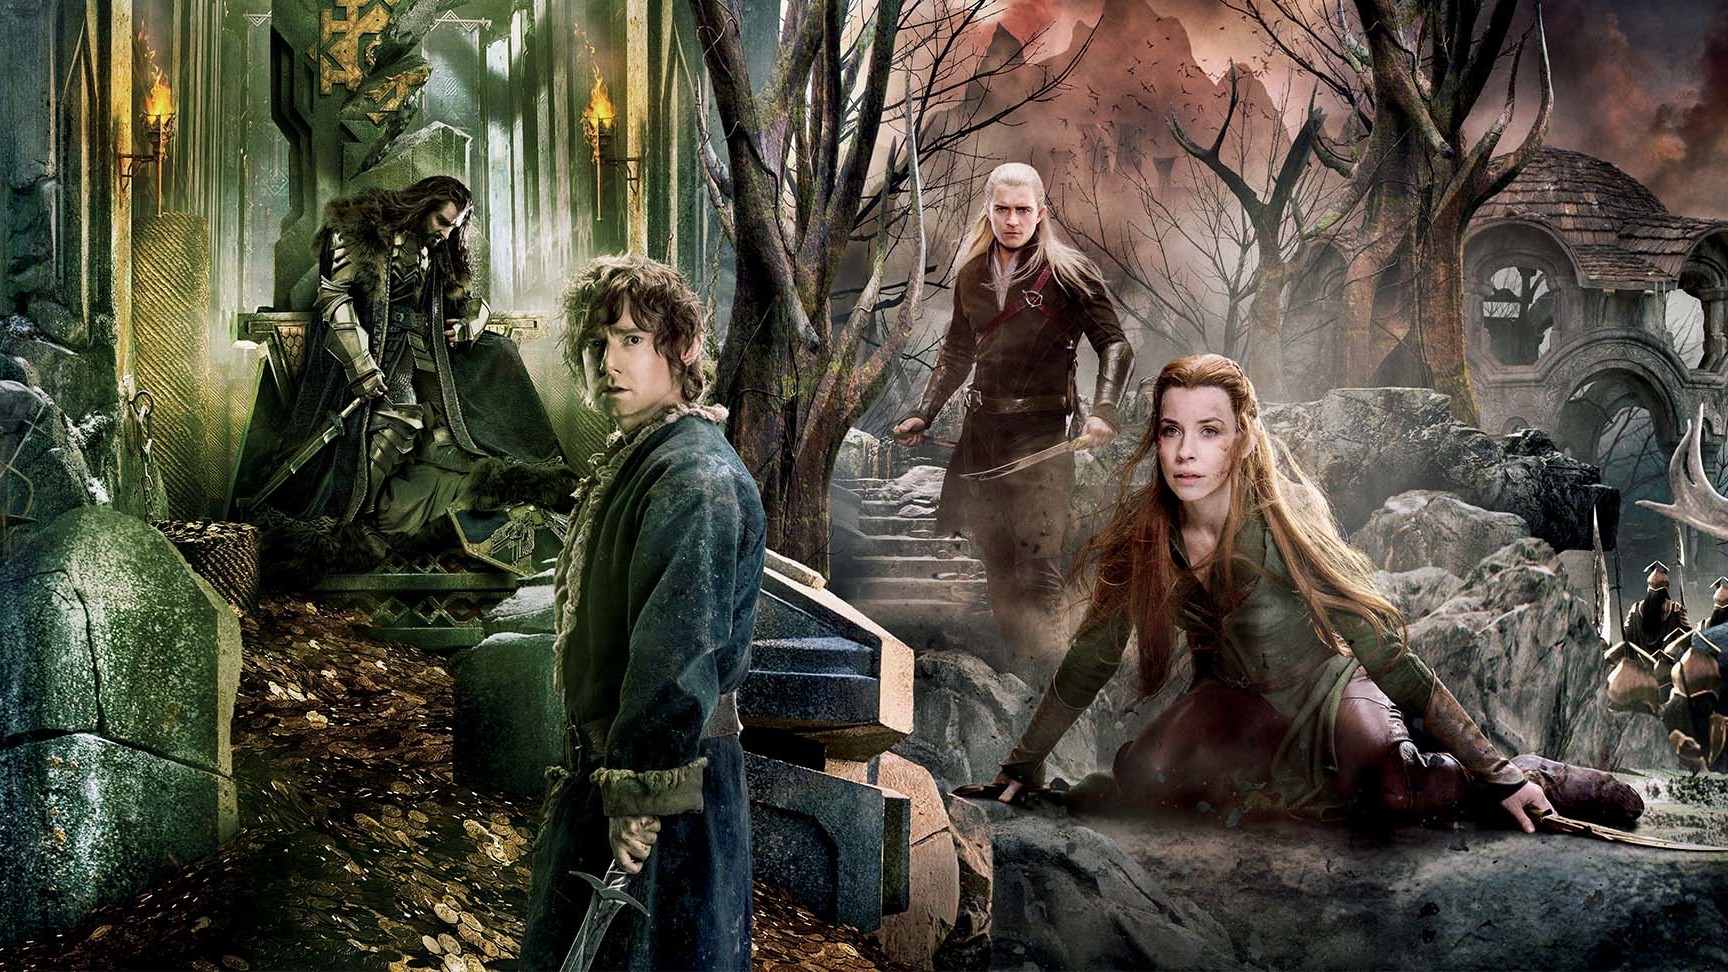 De grootste trailers: 'Hobbit', 'Youth' en meer